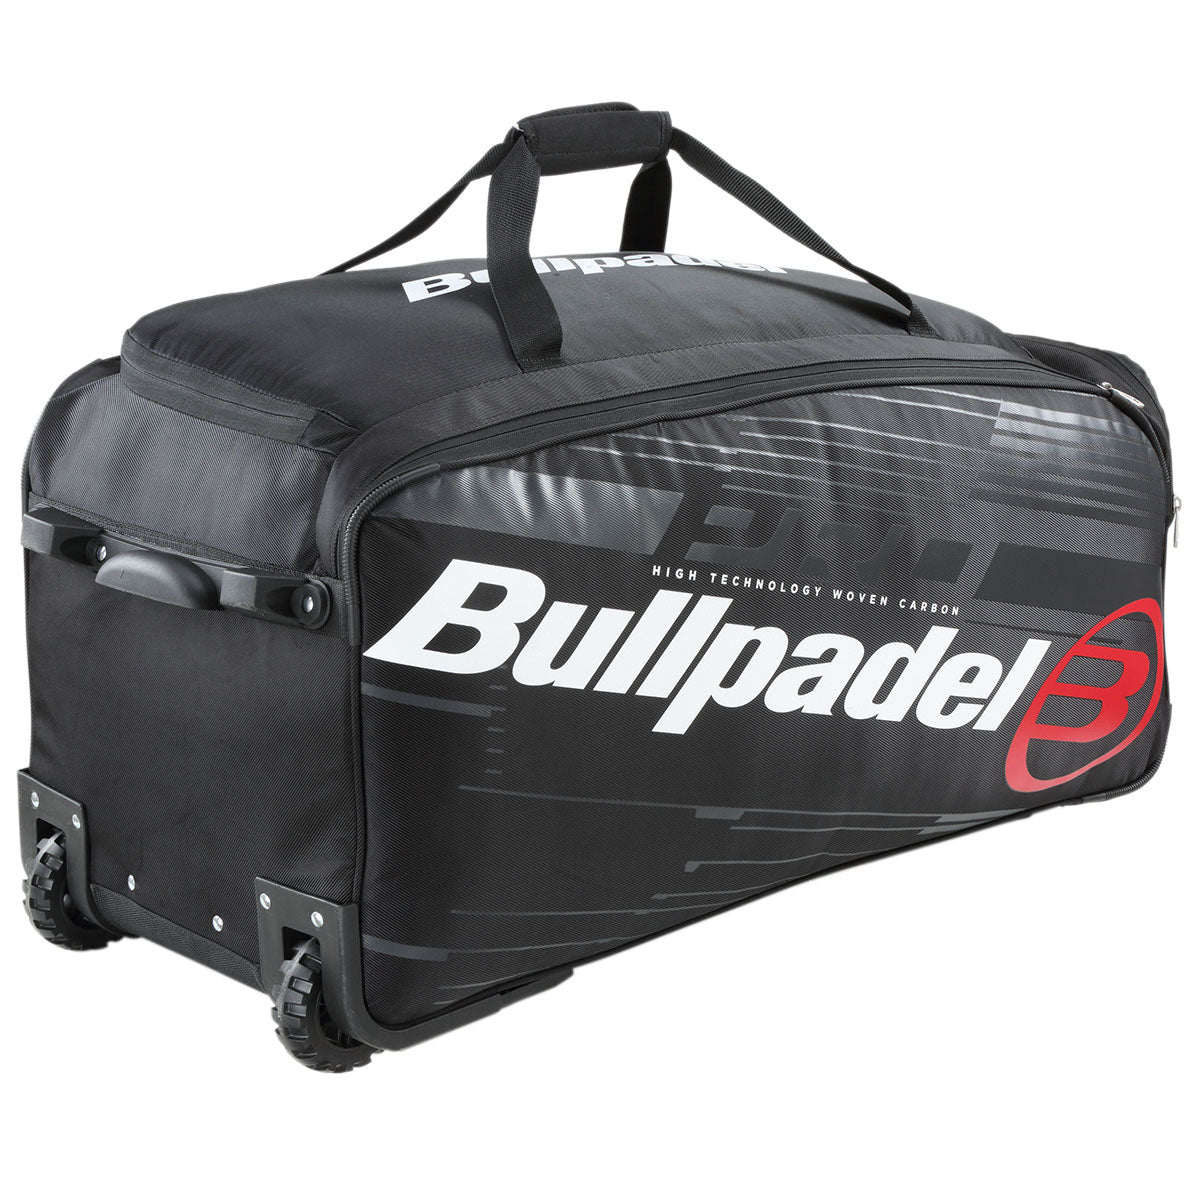 Bullpadel Trolley Bag